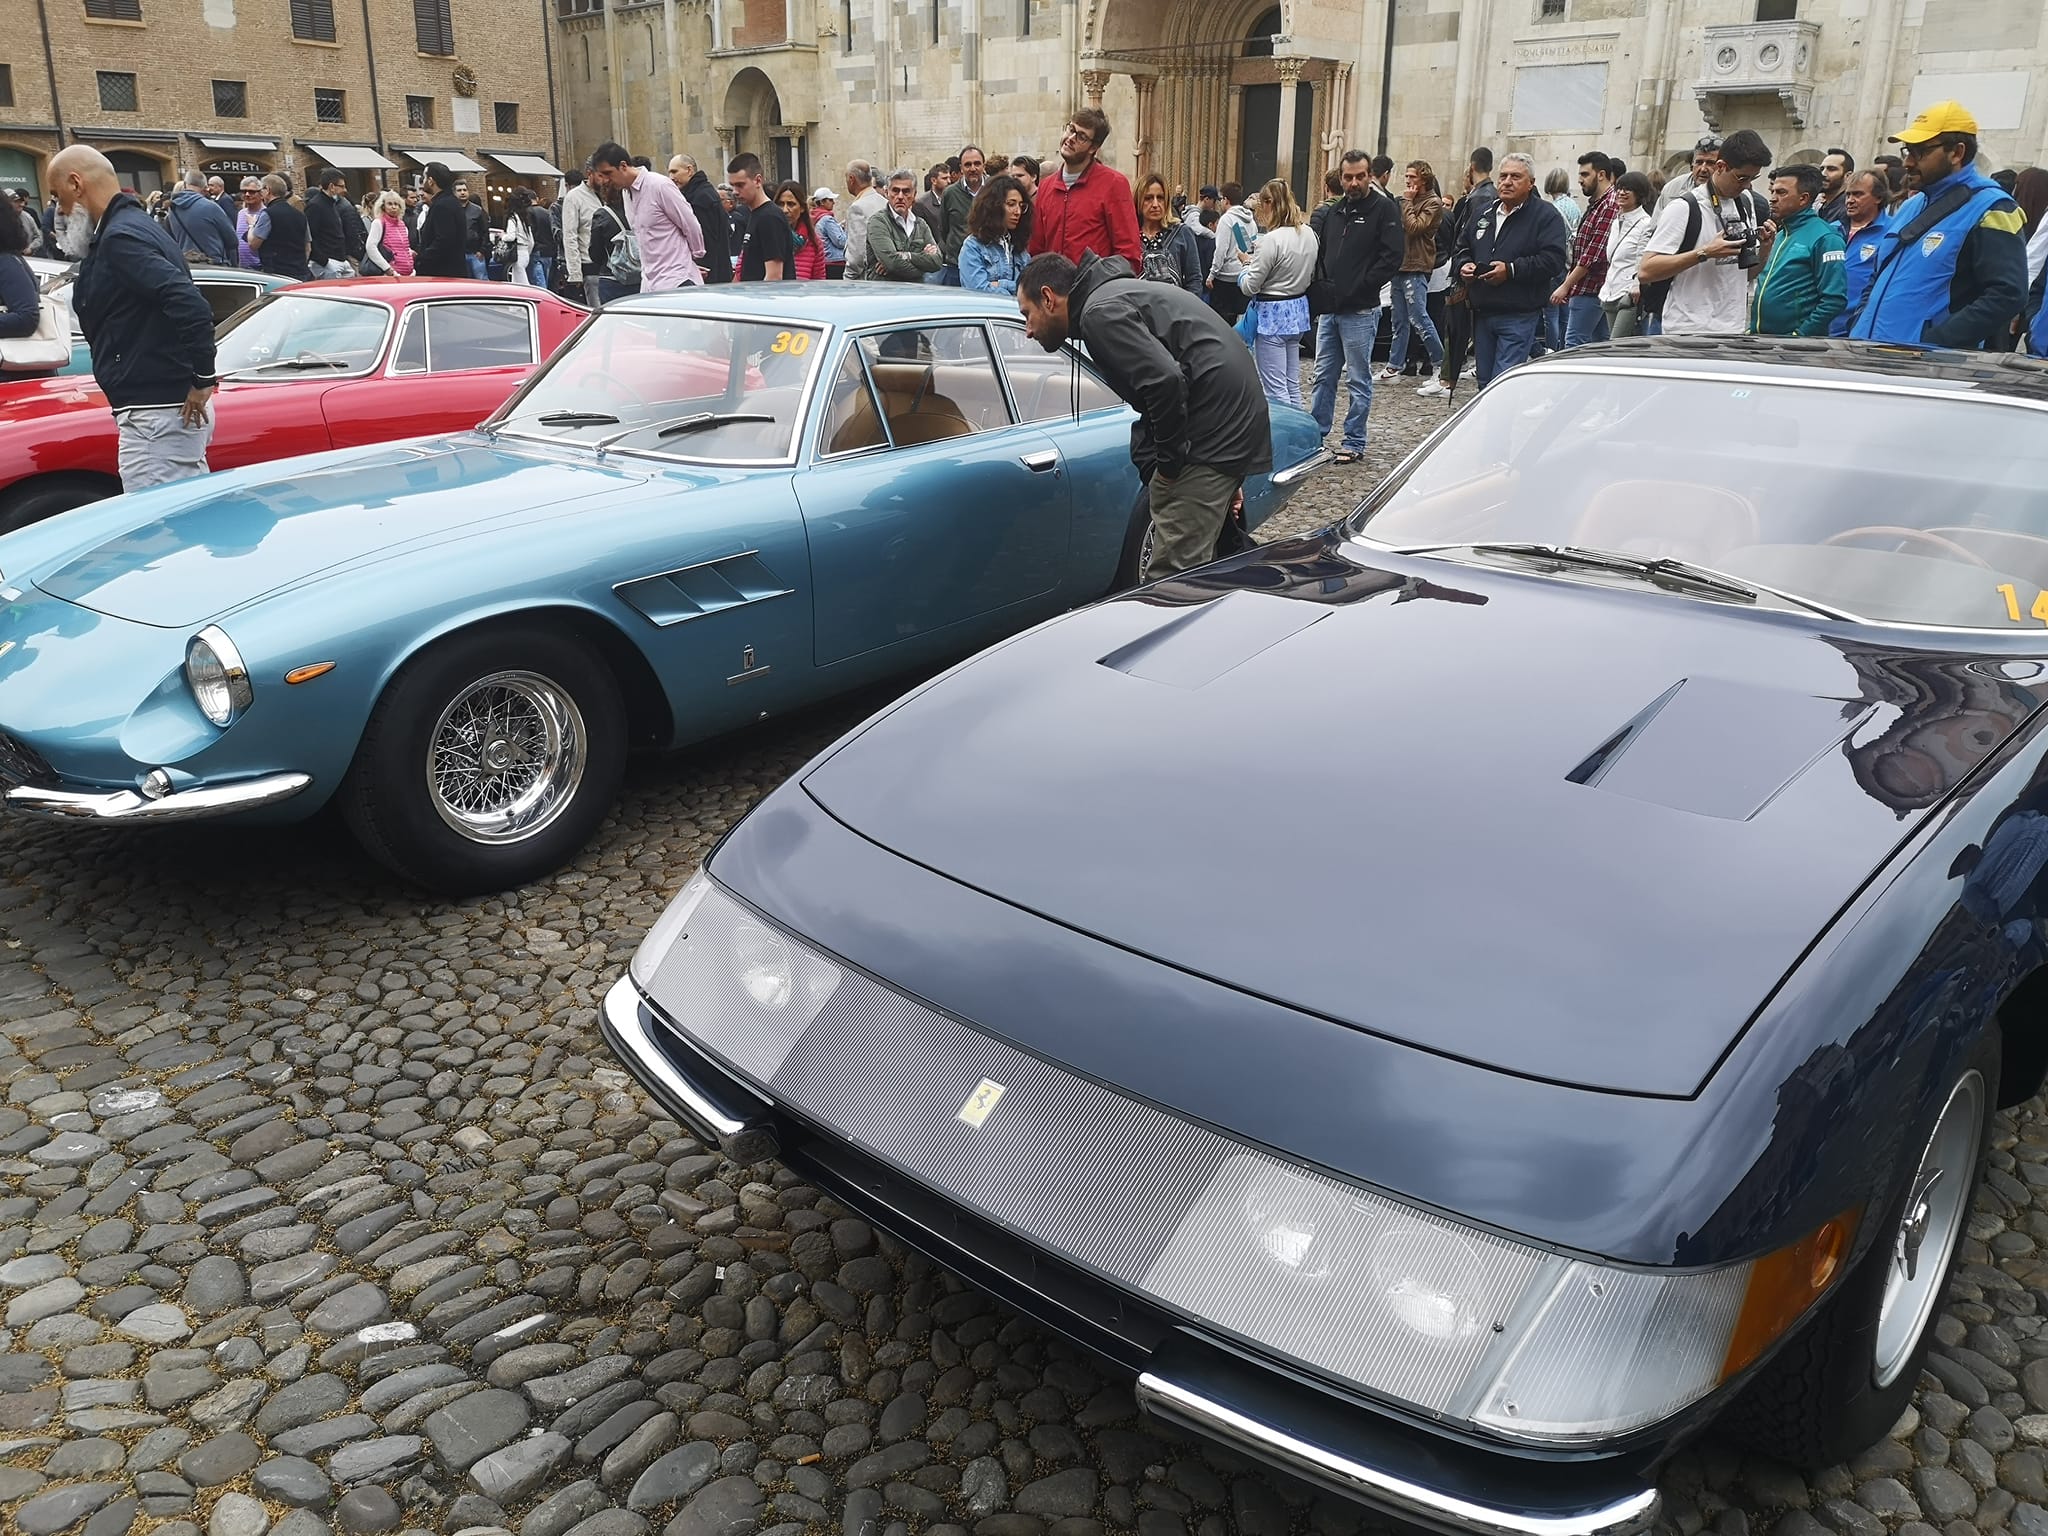  Motor Valley Fest  / Boom di turisti, “4300 posti letto occupati a Modena, un record” (video)